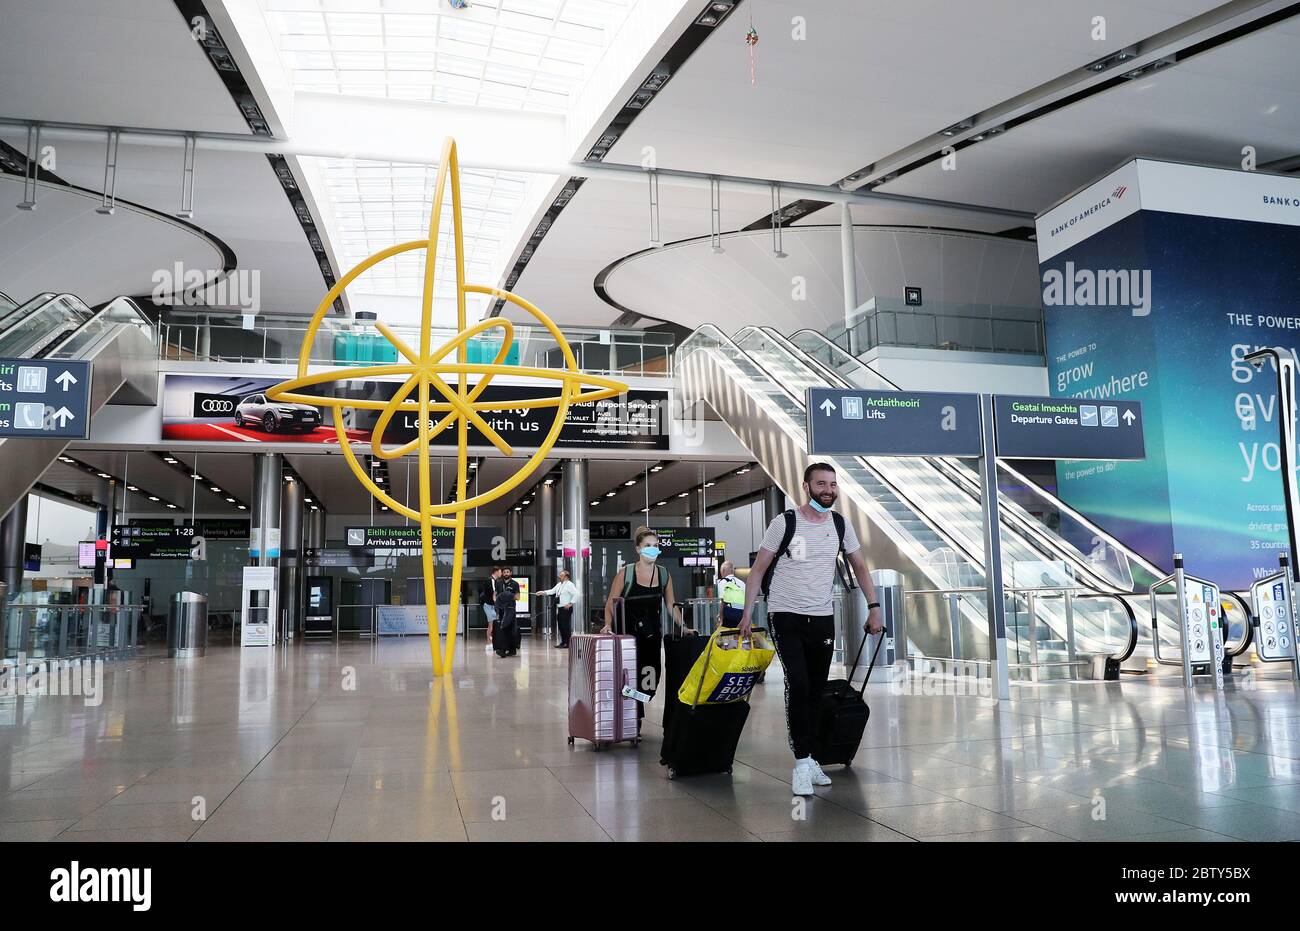 Personen mit Schutzmaske laufen durch Terminal 2 am Flughafen Dublin, da die Anforderung für Personen, die aus Übersee nach Irland kommen, die Behörden zu informieren, wo sie sich selbst isolieren werden, in Kraft getreten ist. Stockfoto